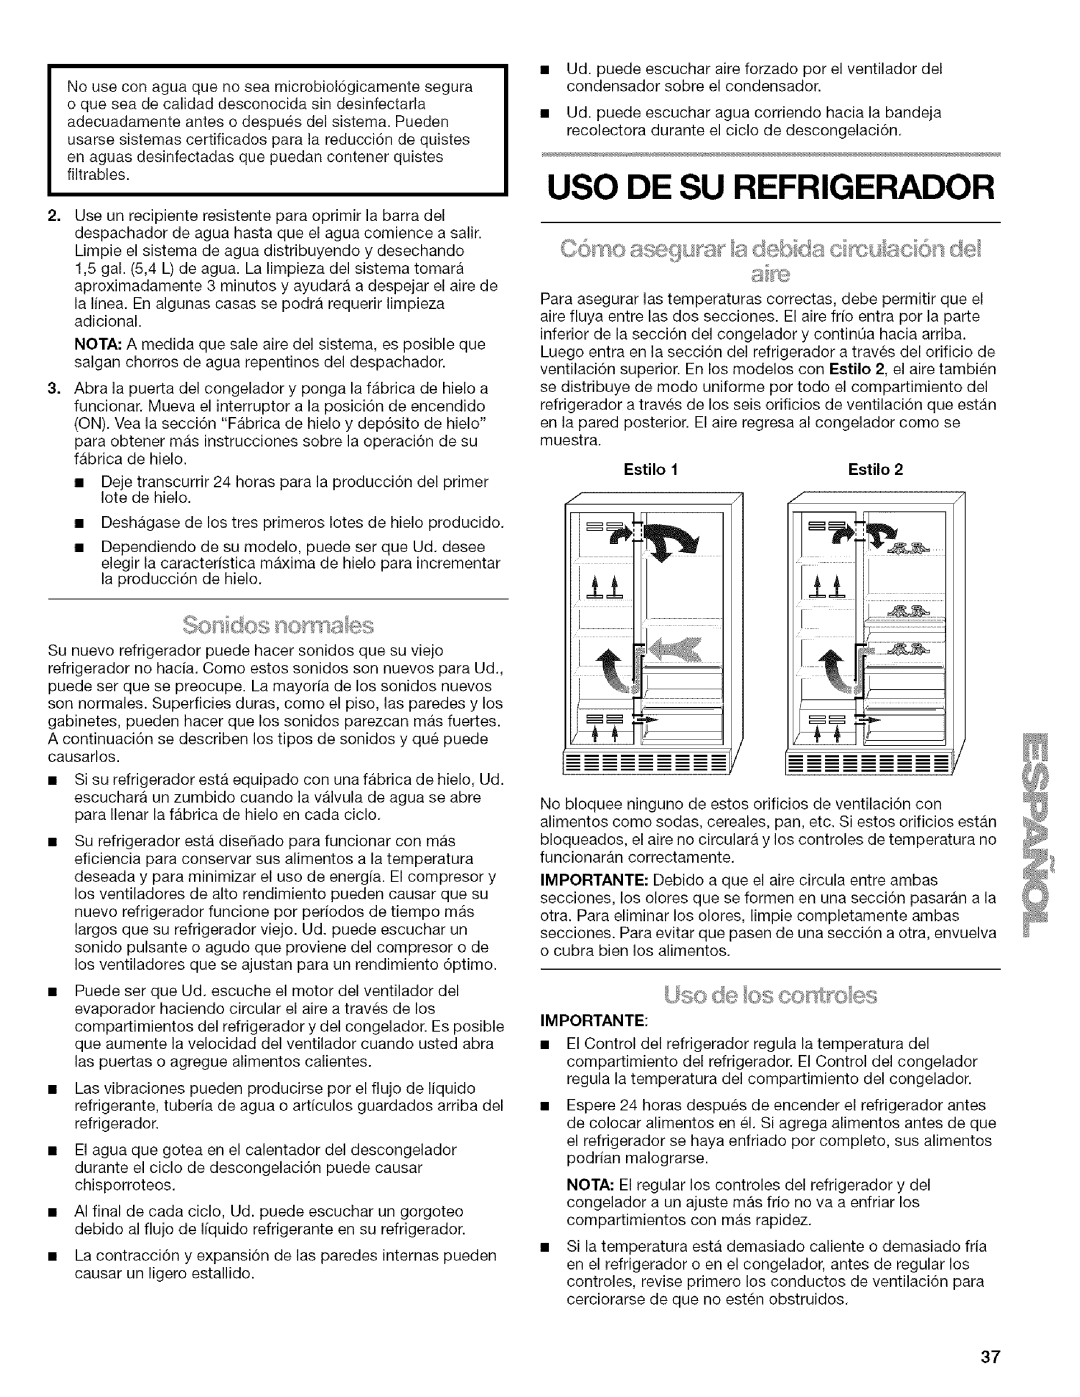 Kenmore 2318589 manual Uso De Su Refrigerador, Estilo 